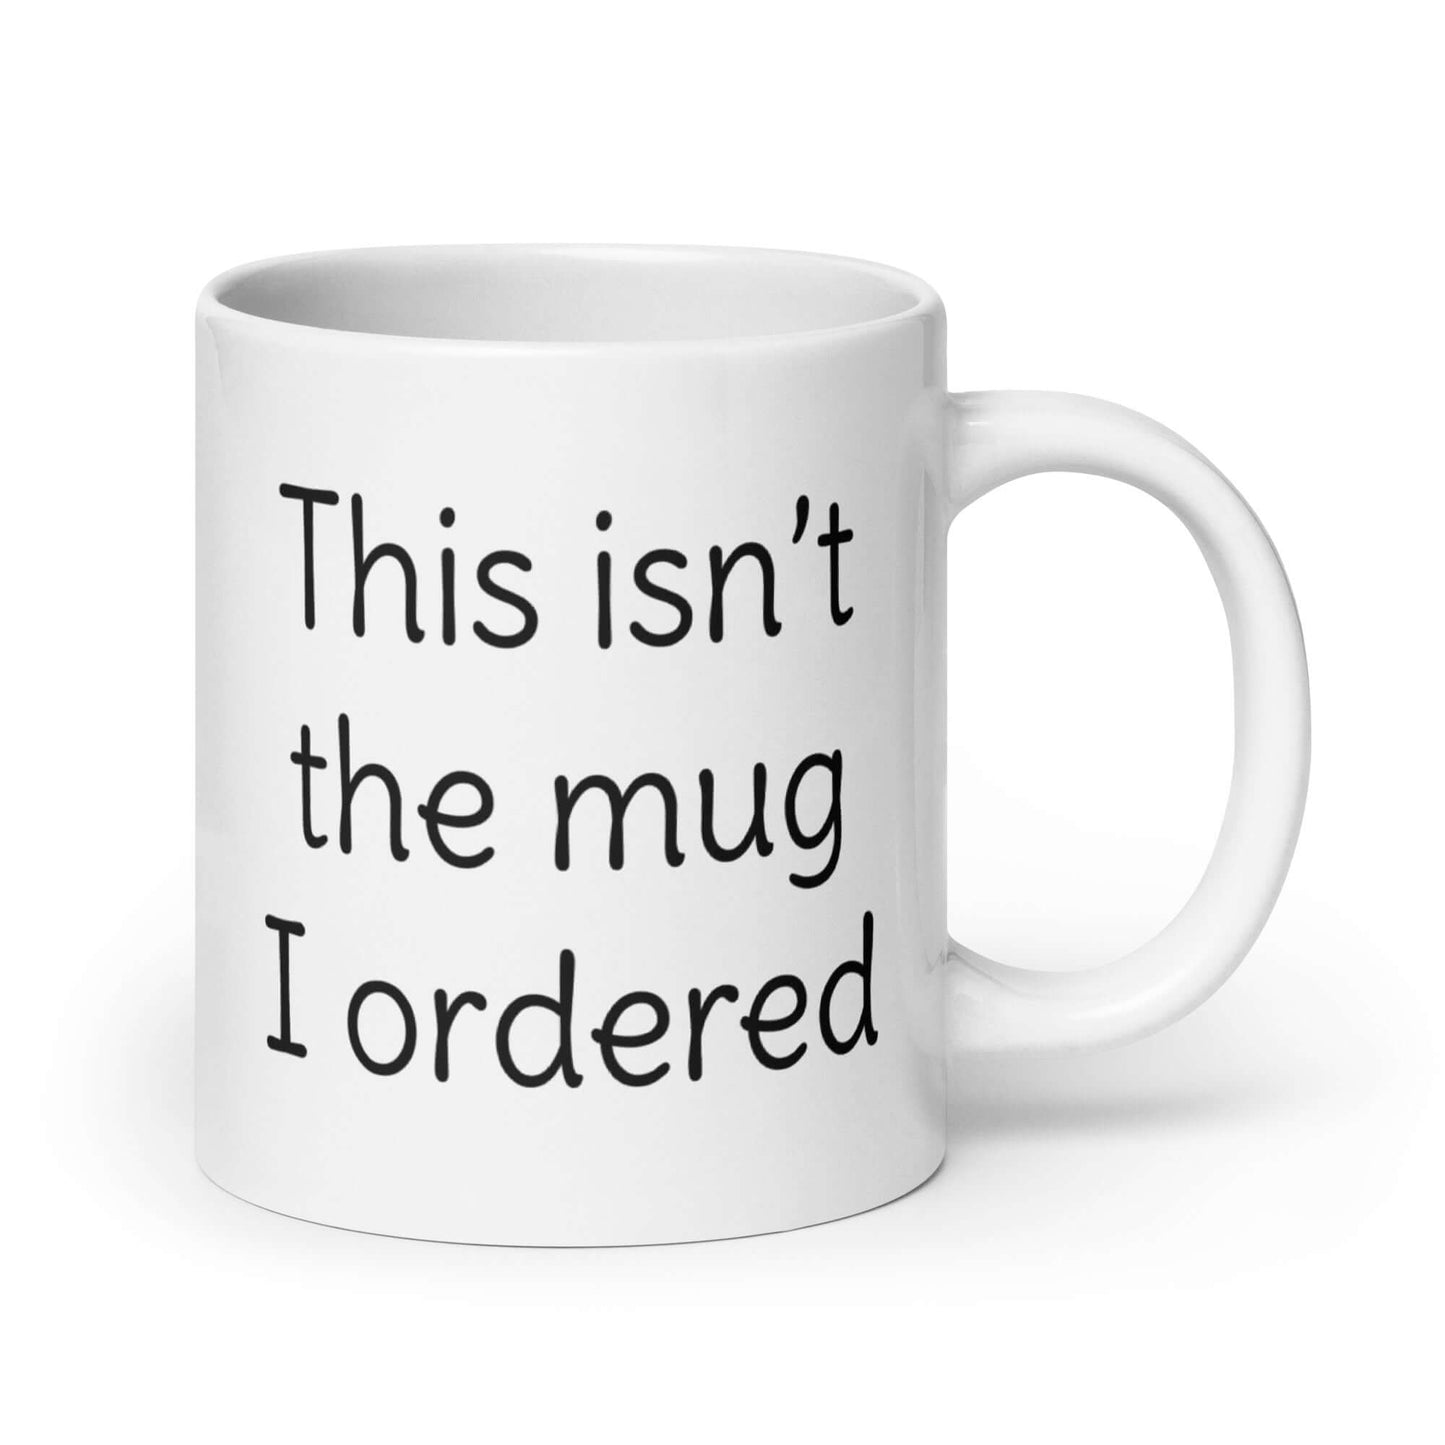 This isn't the mug I ordered silly sarcastic funny coffee mug